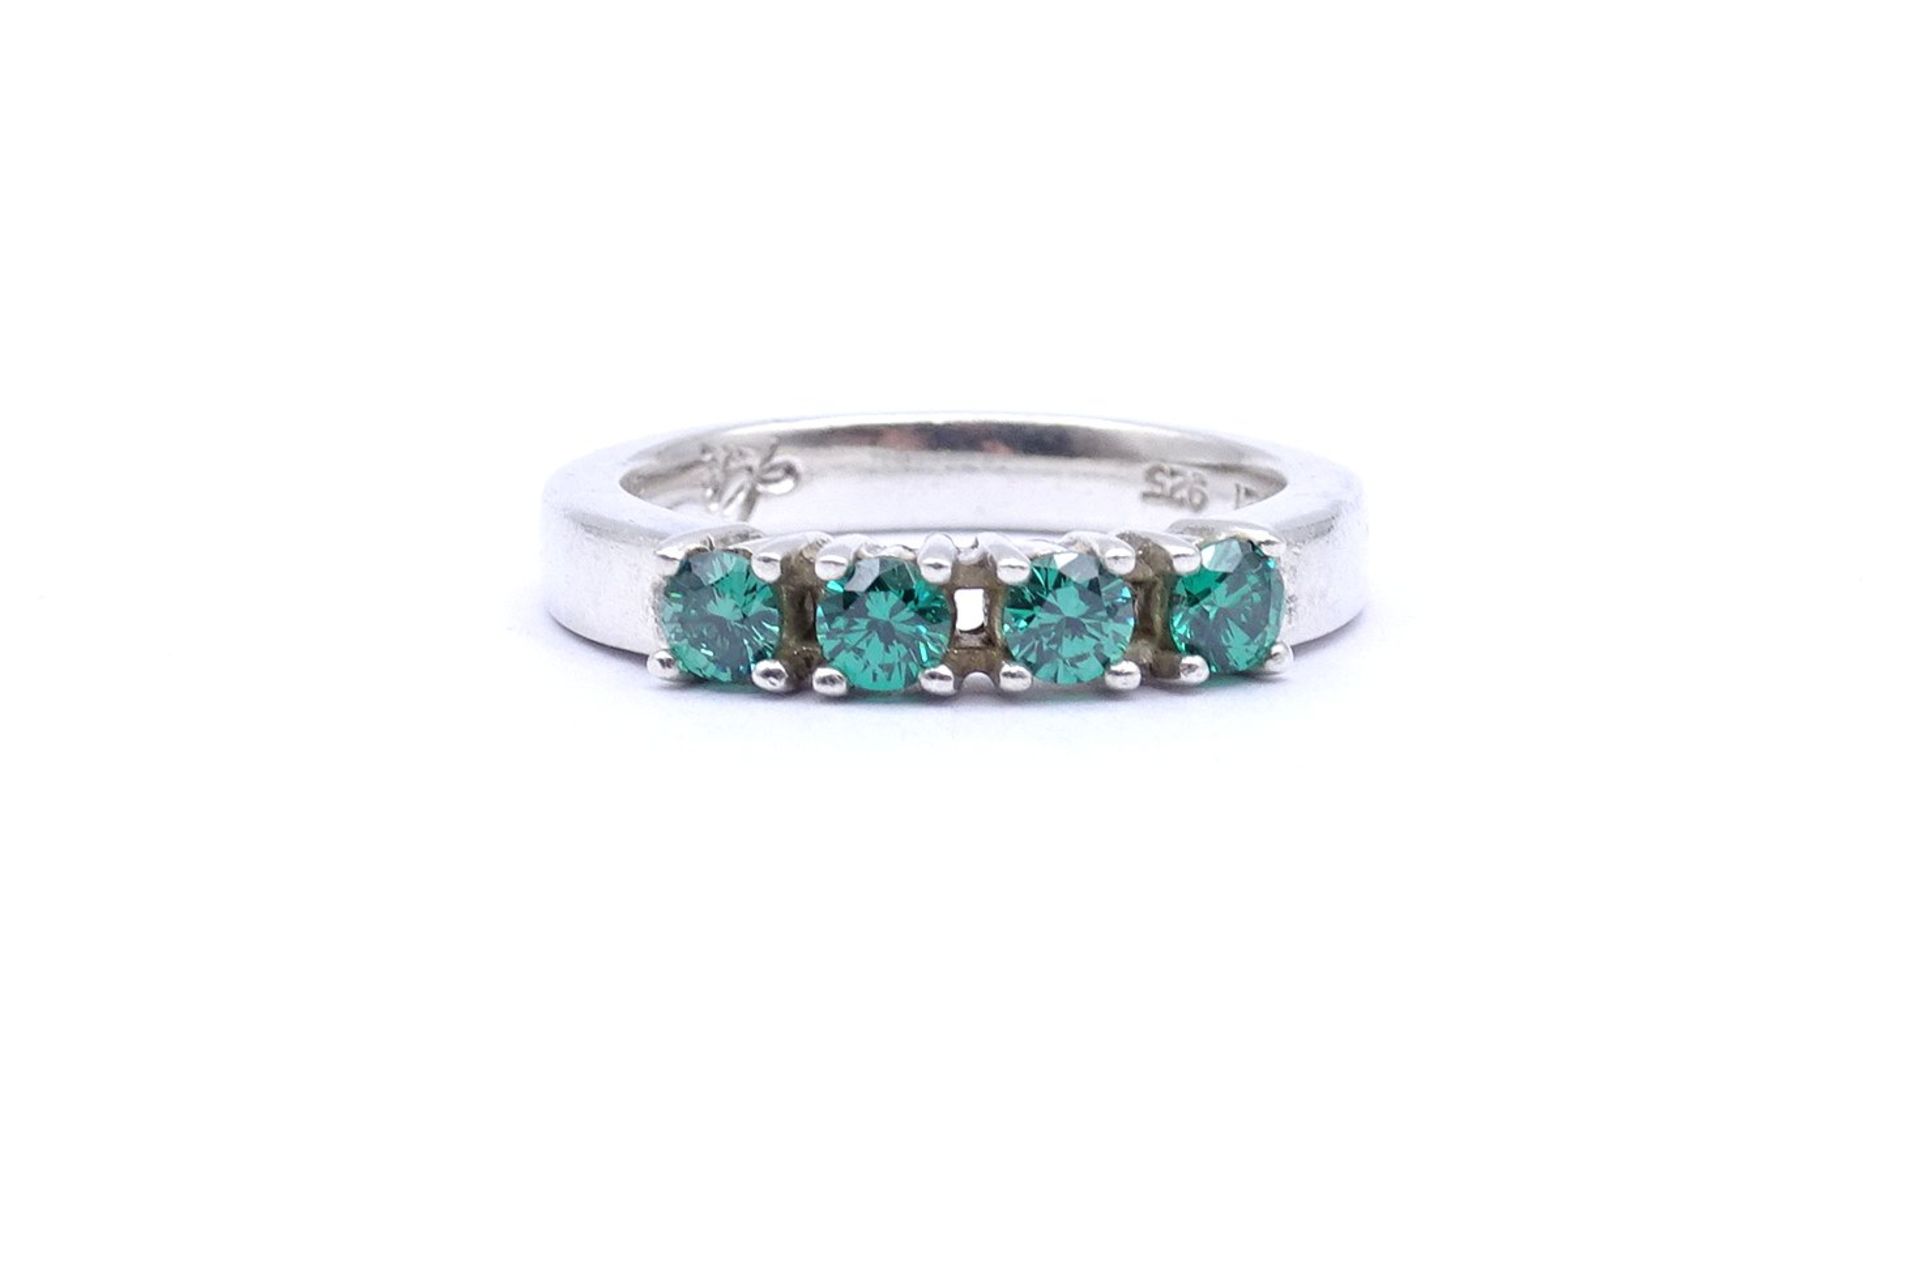 Silber Ring mit grünen Steinen, 5,6g., RG 57